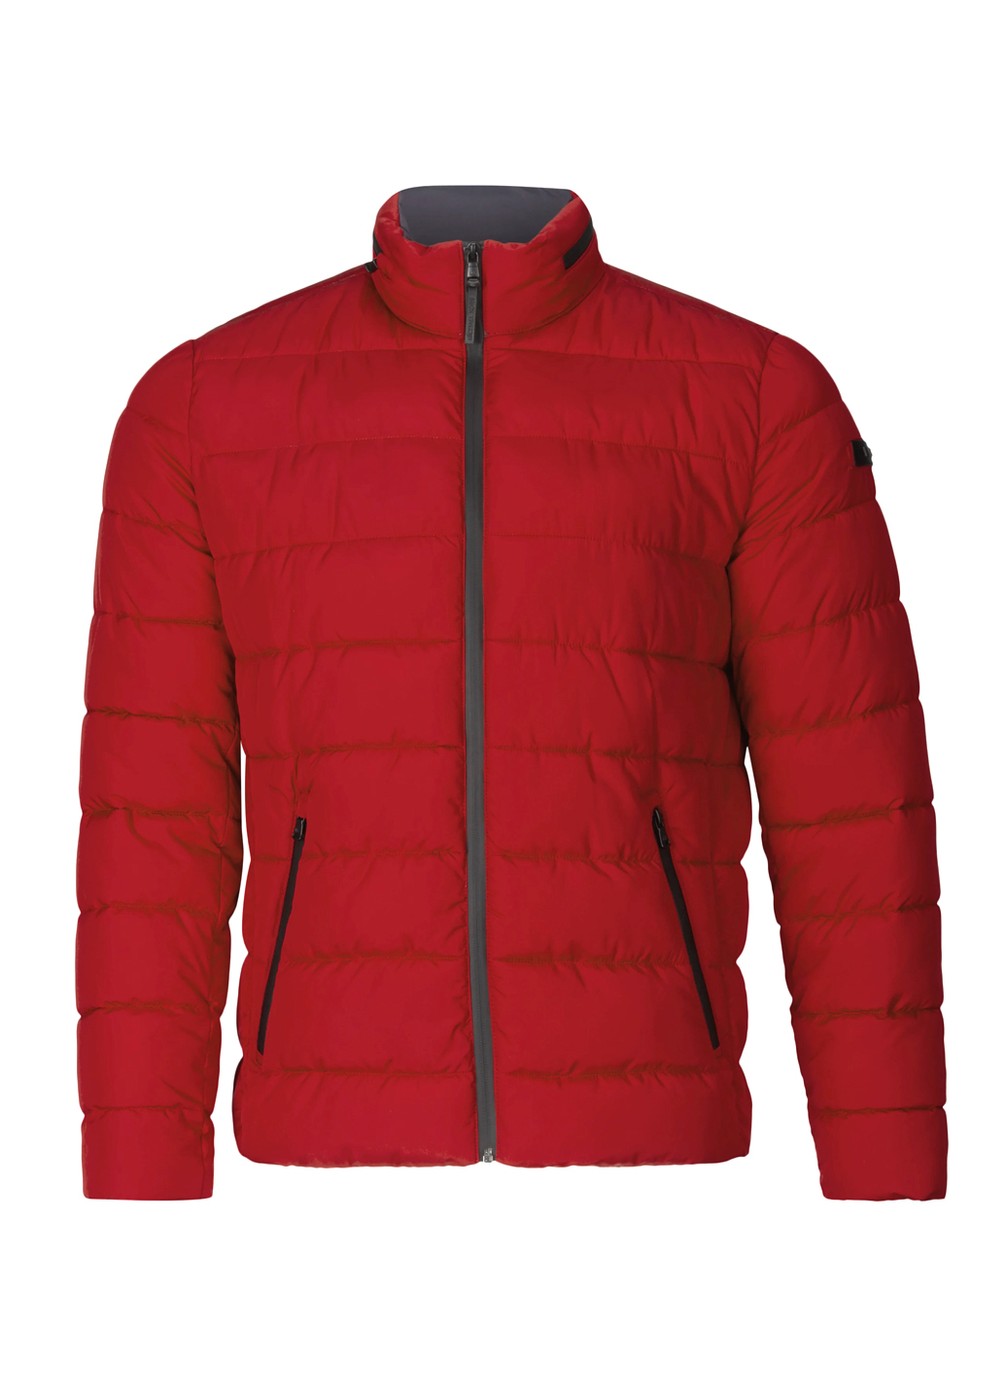 Куртка демисезонная - мужская куртка Michael Kors, L, L